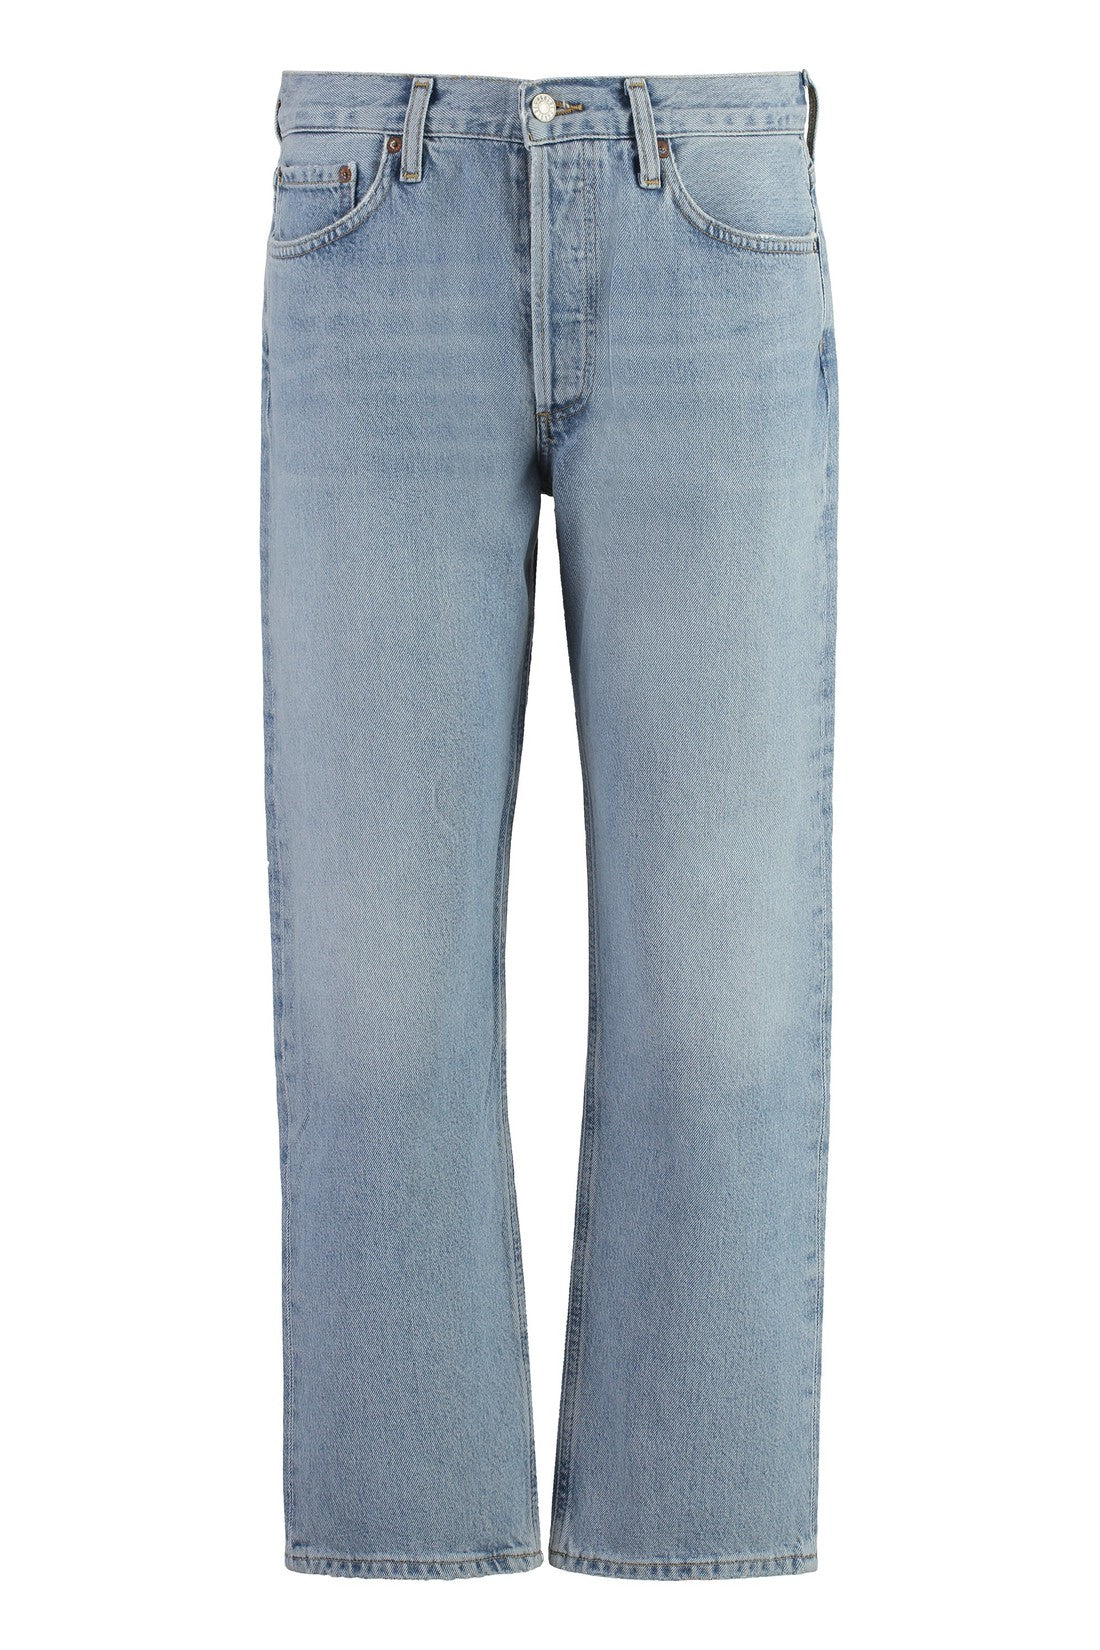 AGOLDE-OUTLET-SALE-Wyman Straight leg jeans-ARCHIVIST